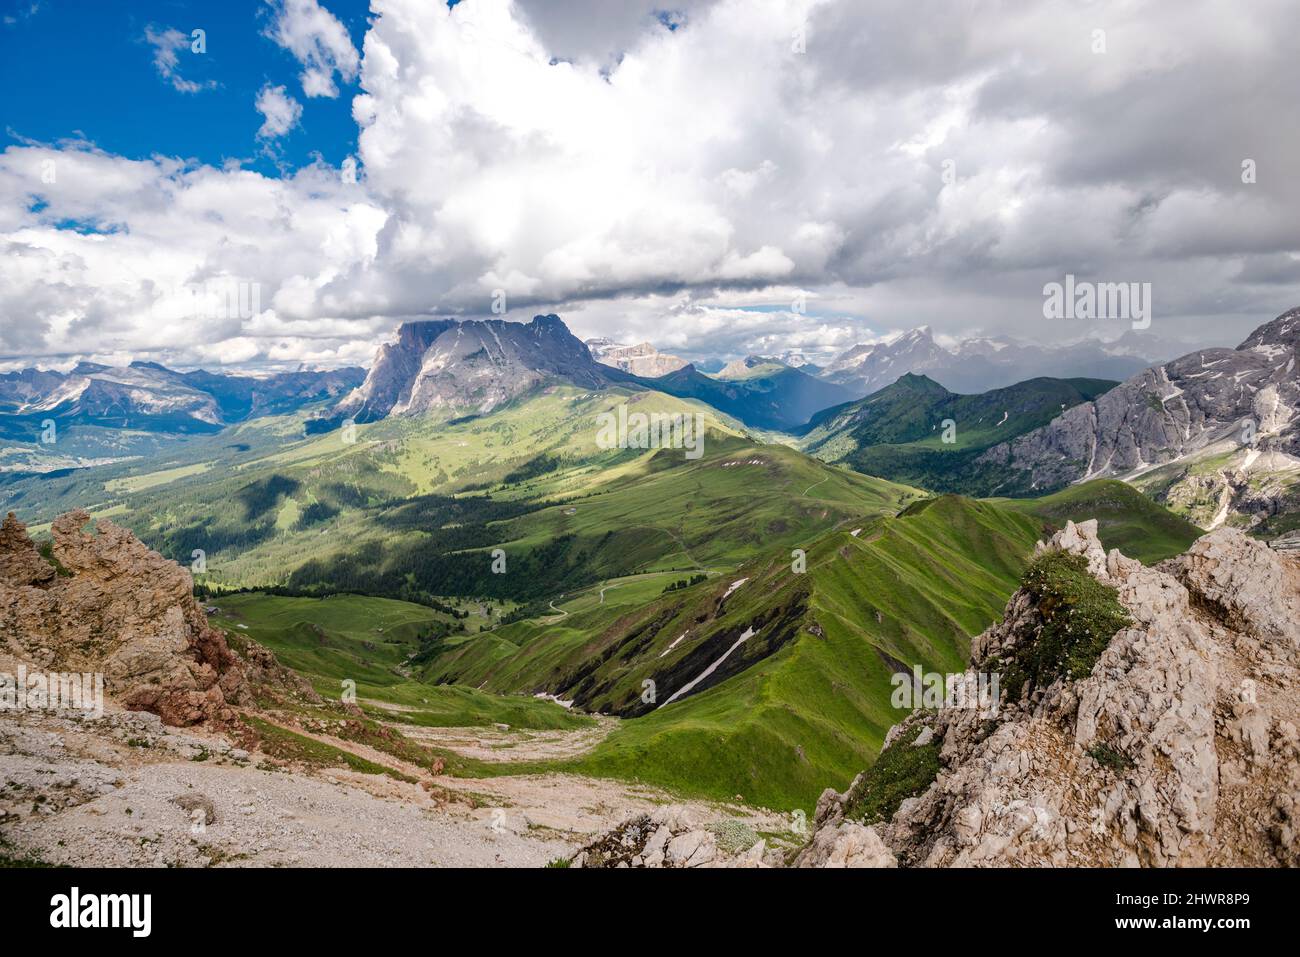 Italia, Alto Adige, nuvole sul paesaggio montagnoso del Parco Naturale dello Sciliar-Rosengarten in estate Foto Stock